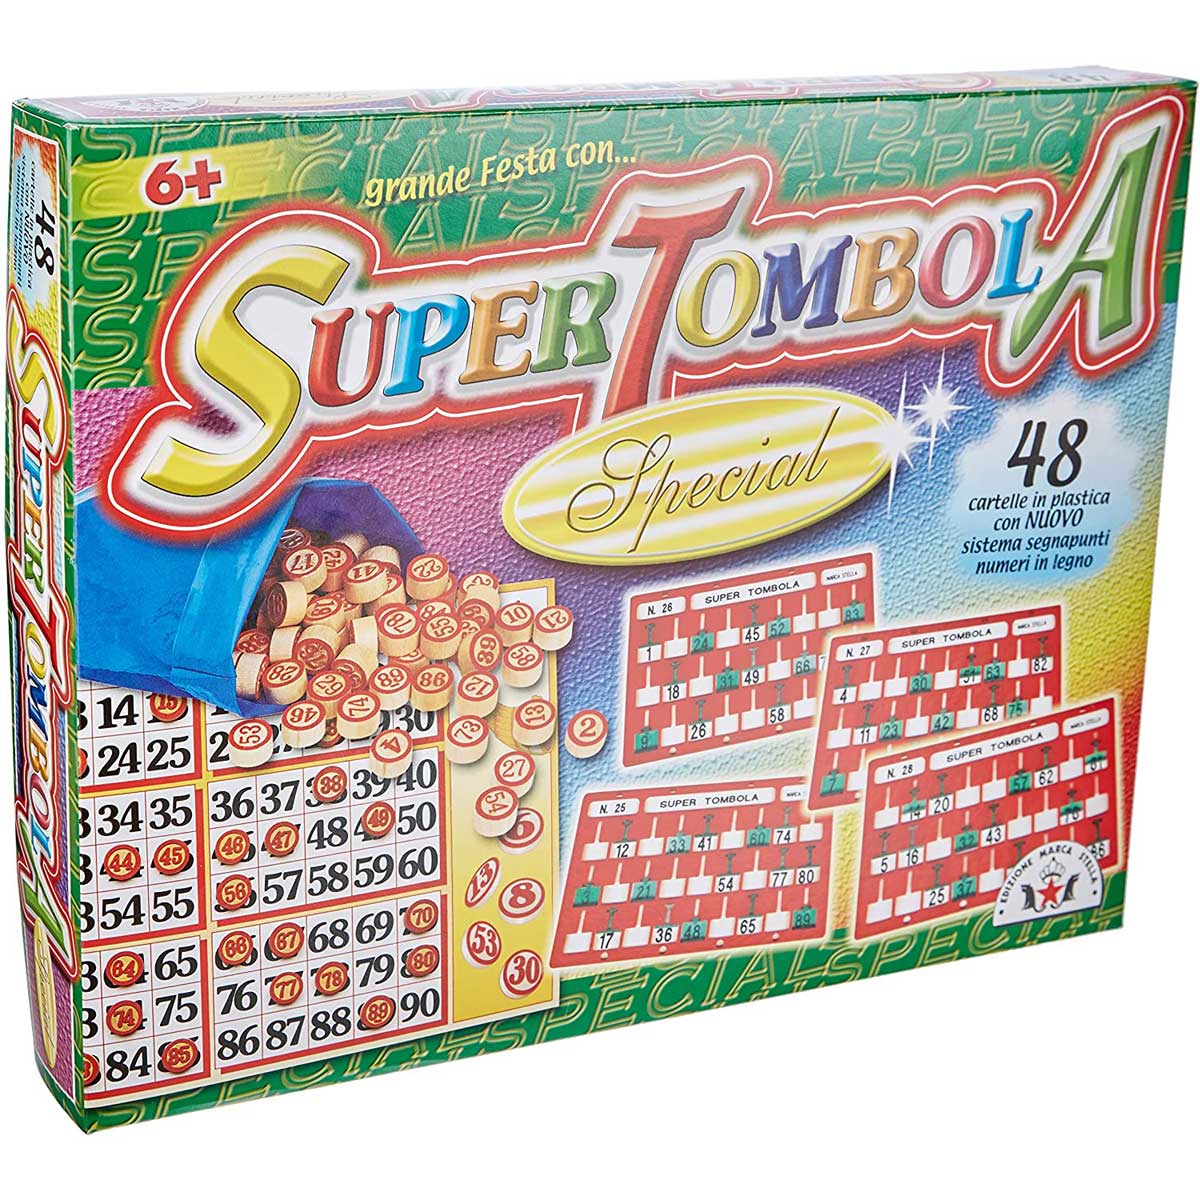 Super Tombola Special 48 Cartelle - 93 — Mornati Paglia